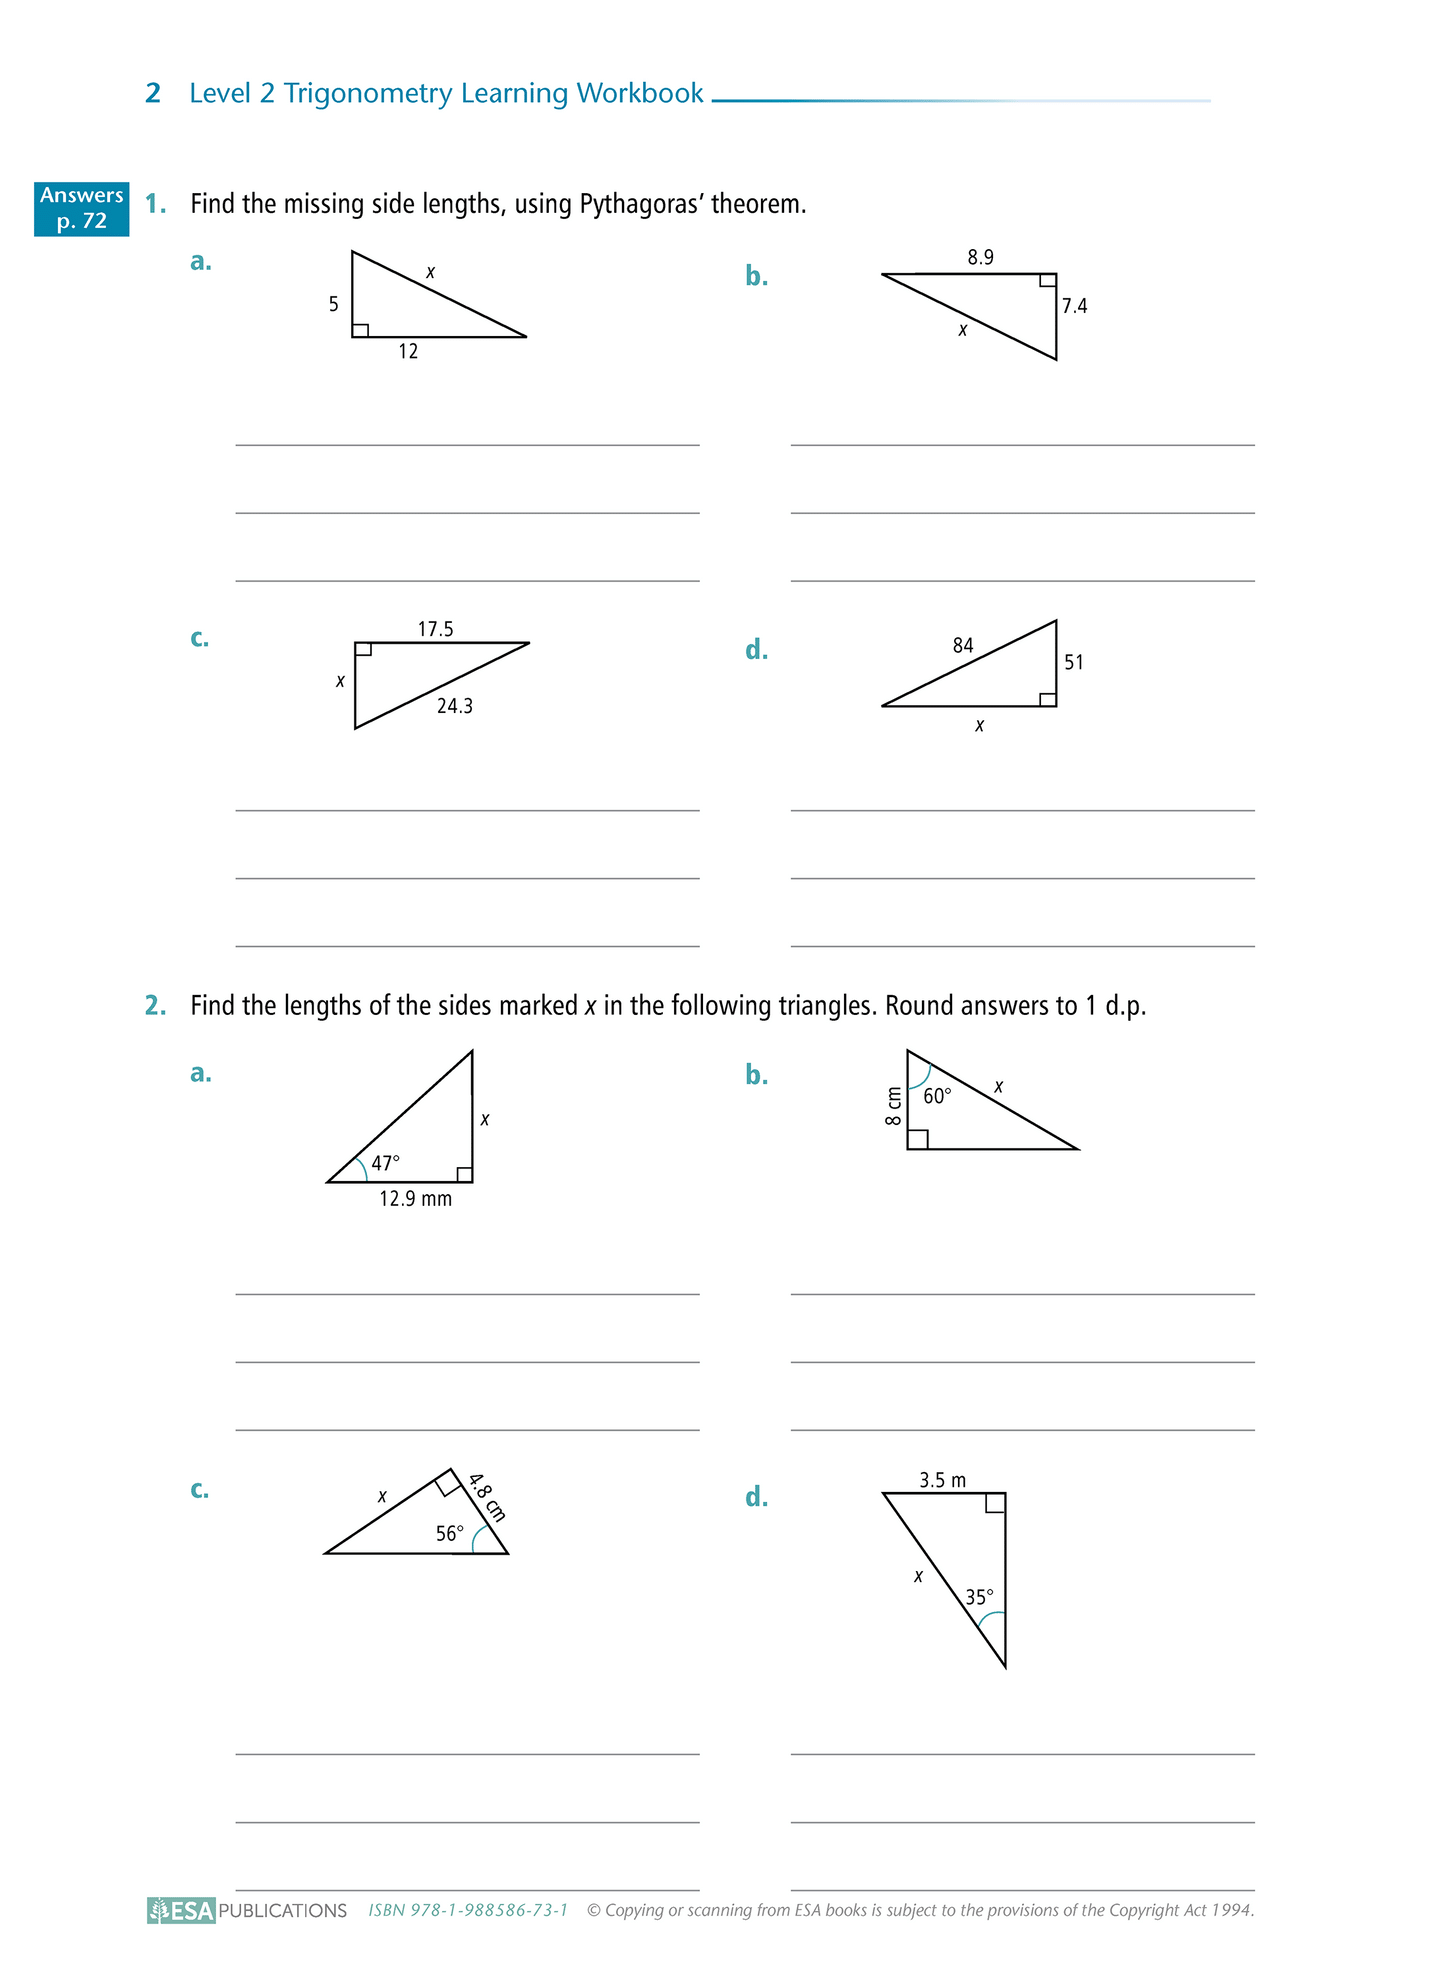 Level 2 Trigonometry 2.4 Learning Workbook